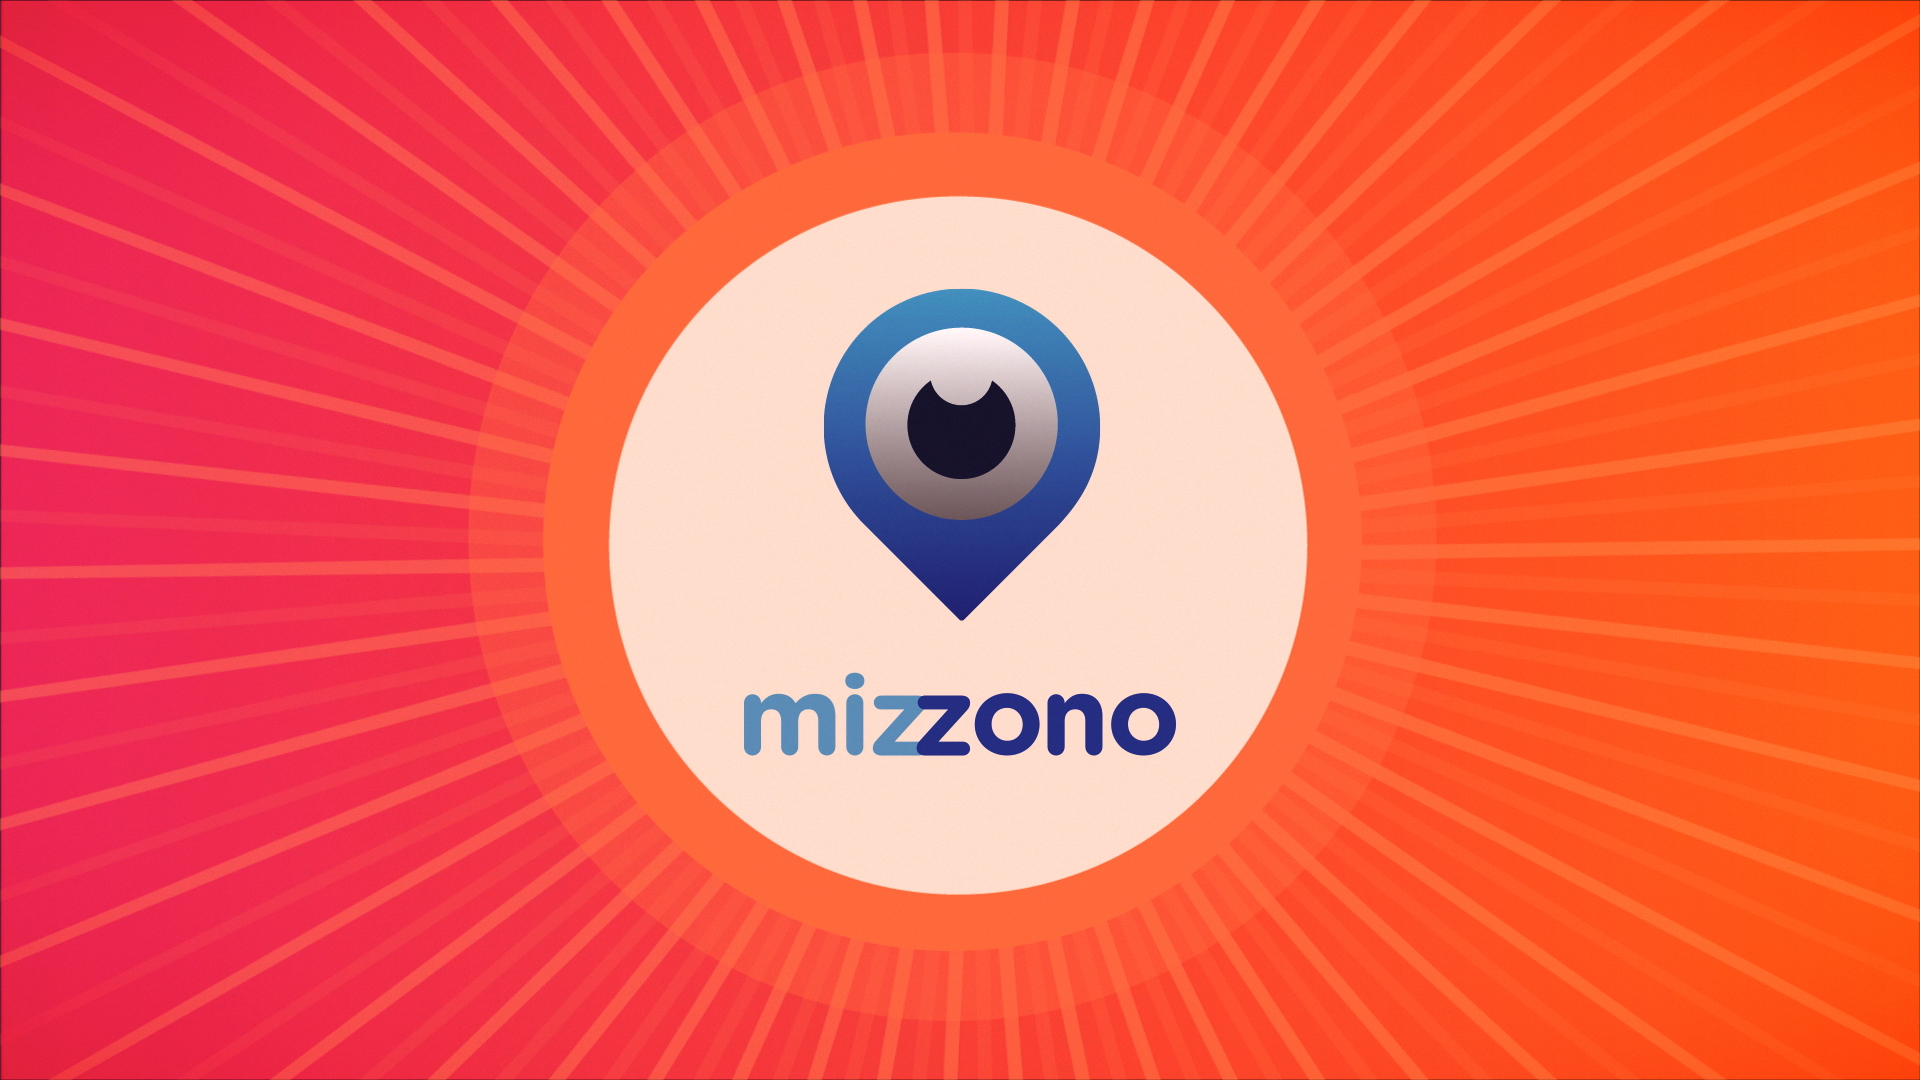 Pieza corporativa motion graphis para contar en que consiste la aplicación app de Mizzono Animación 2D con diseño de personajes